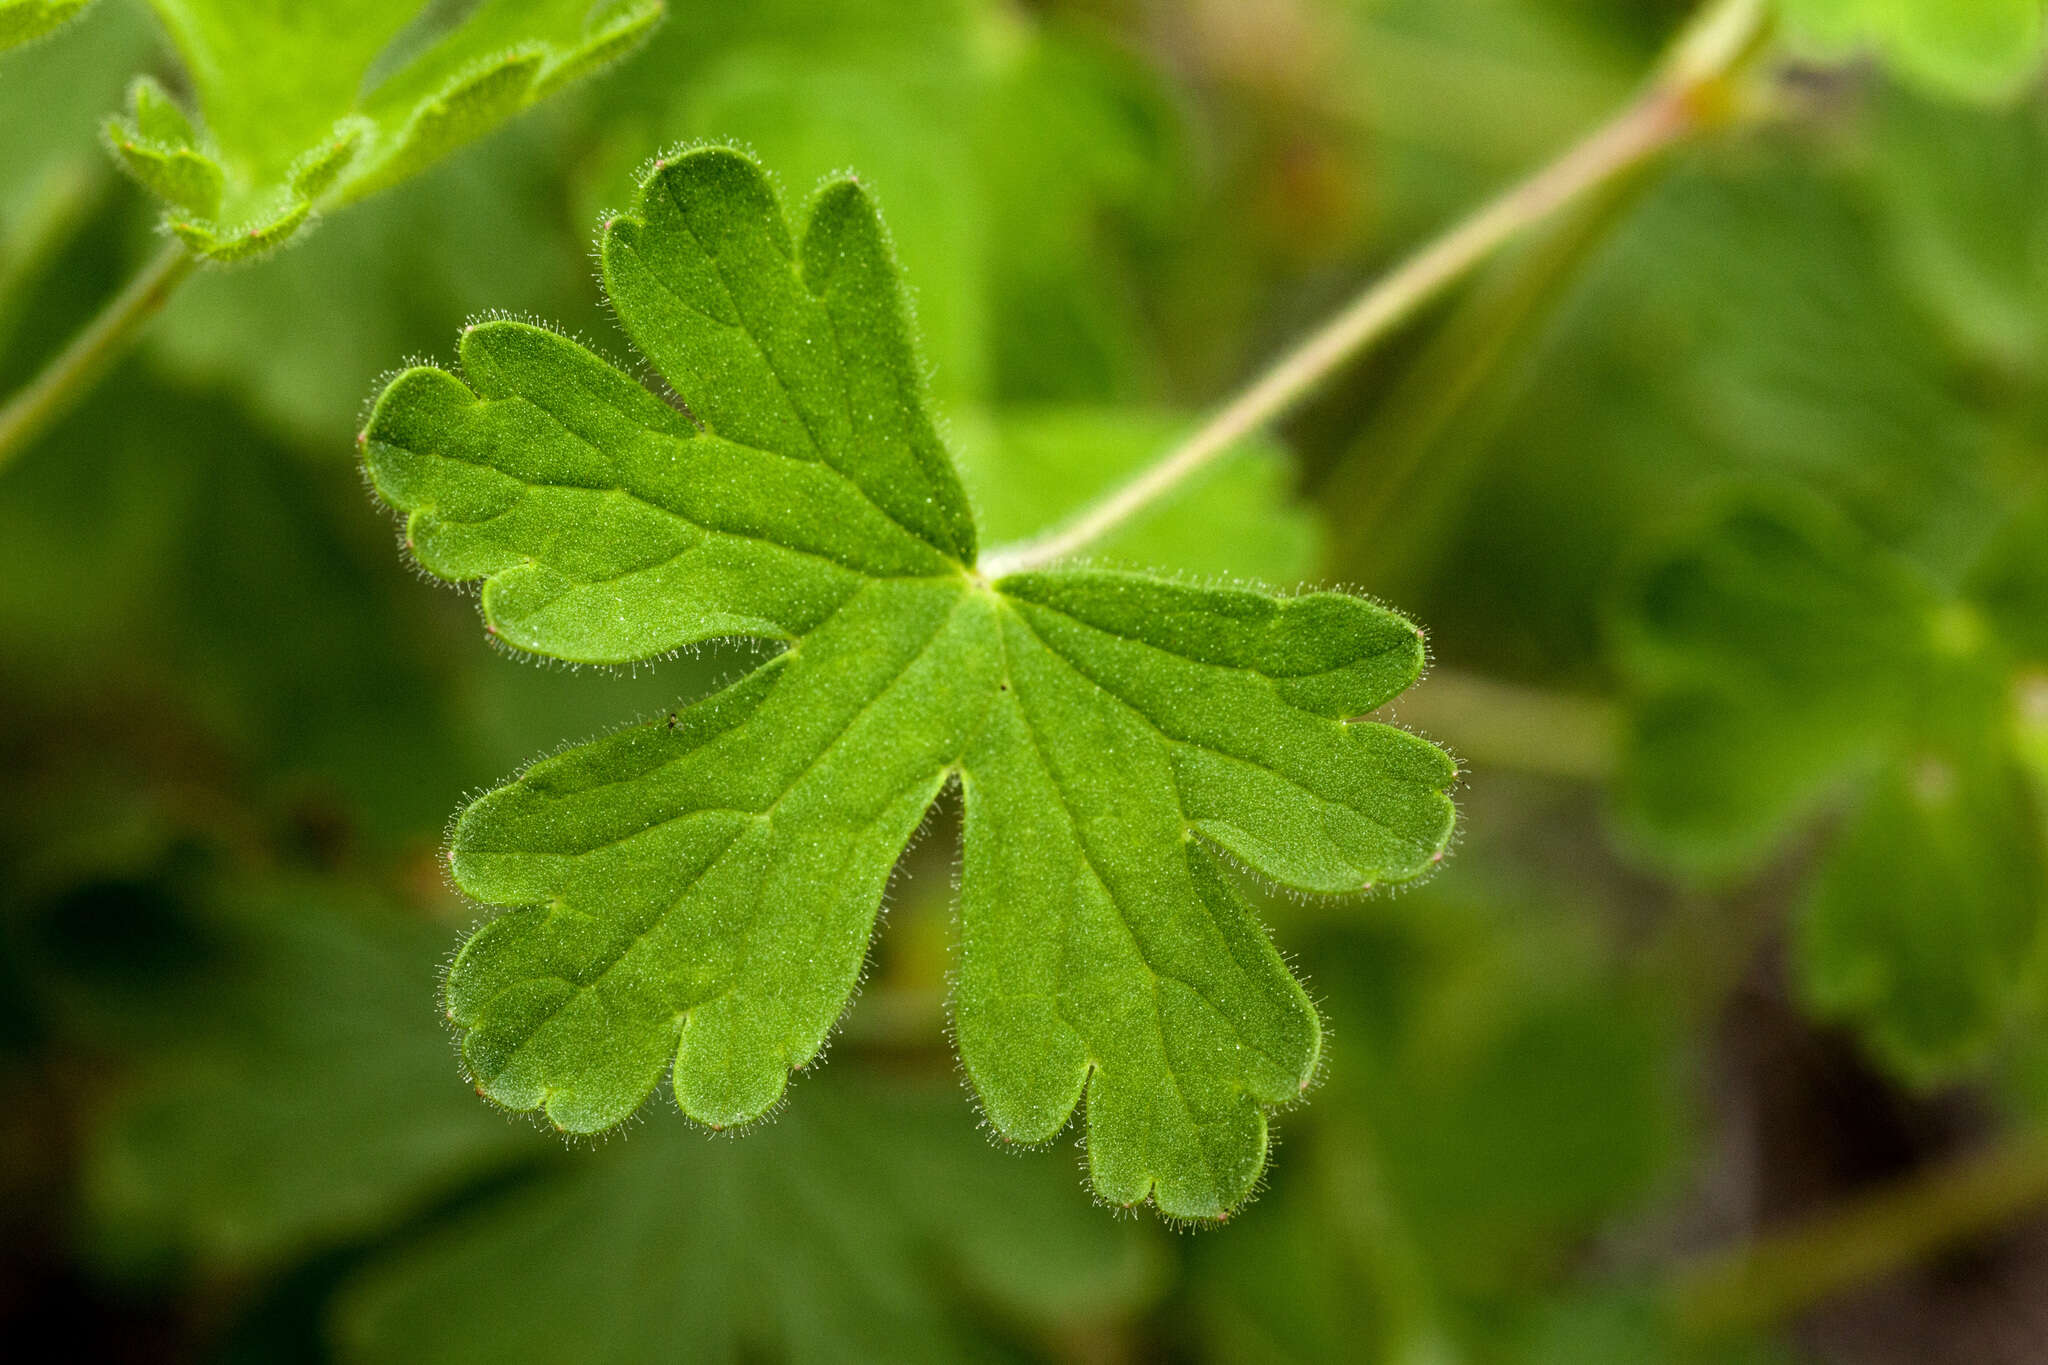 Image of Mogollon geranium